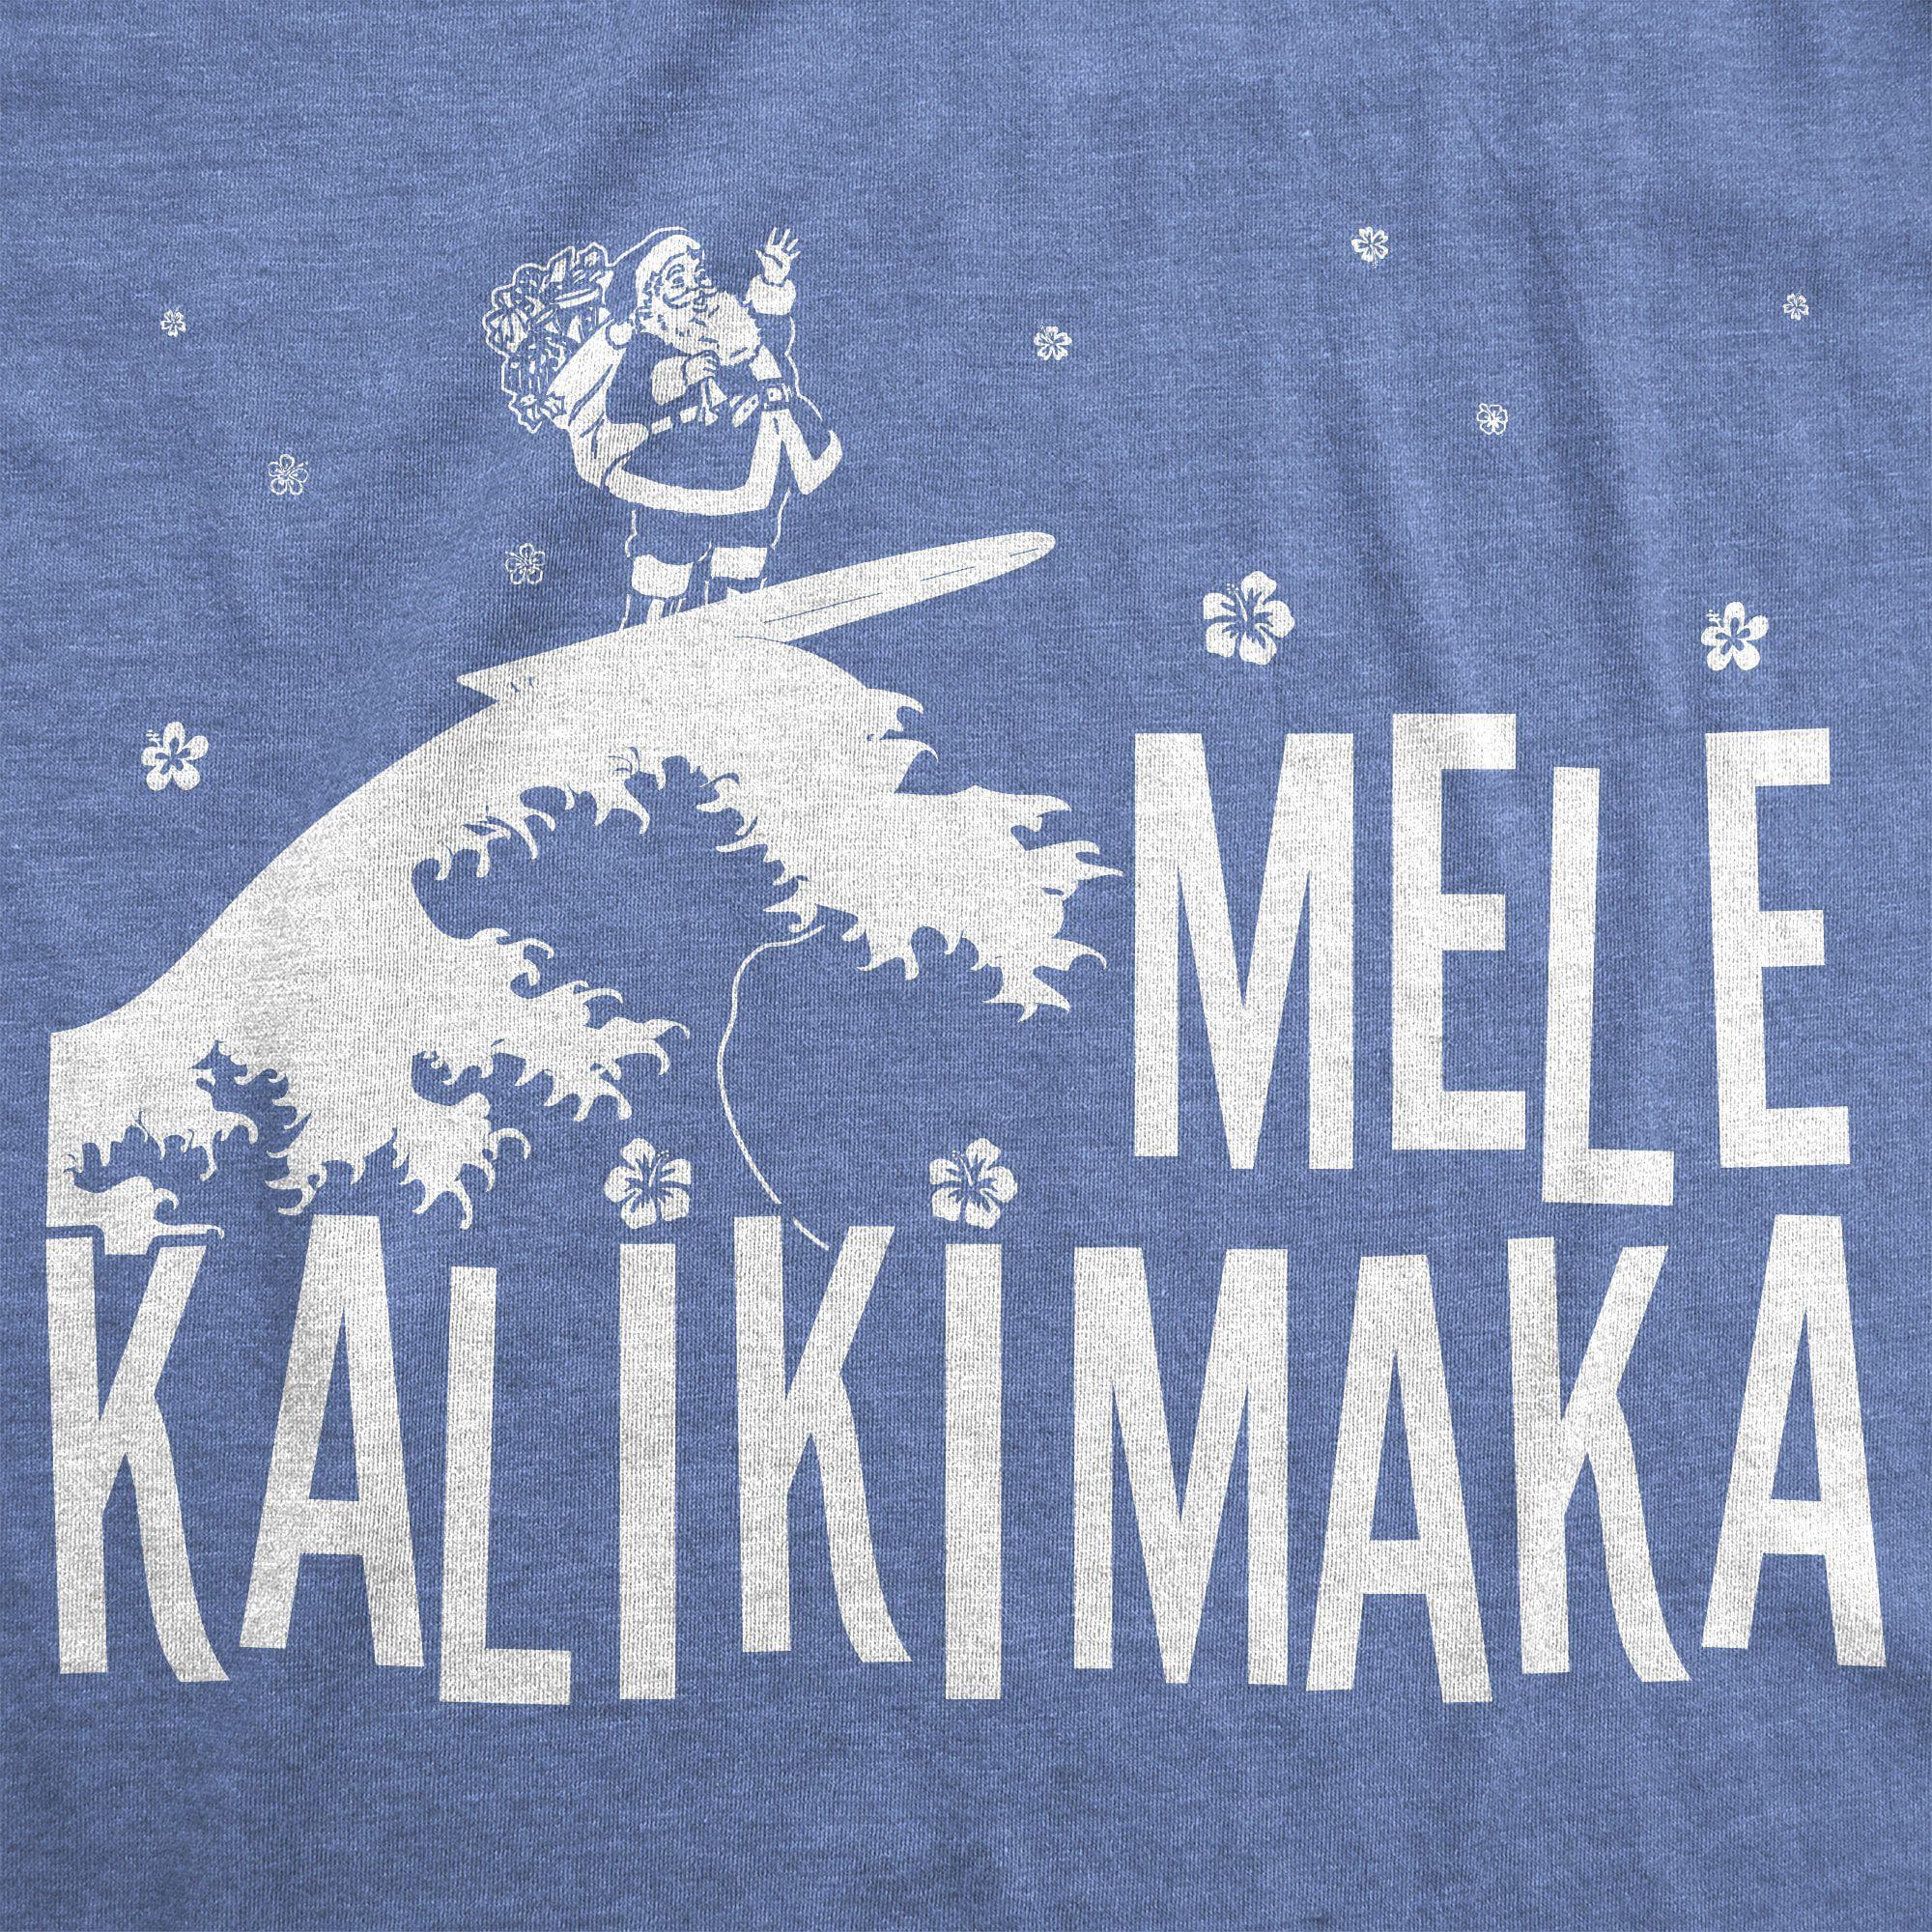 Mele Kalikimaka Women's Tshirt - Crazy Dog T-Shirts